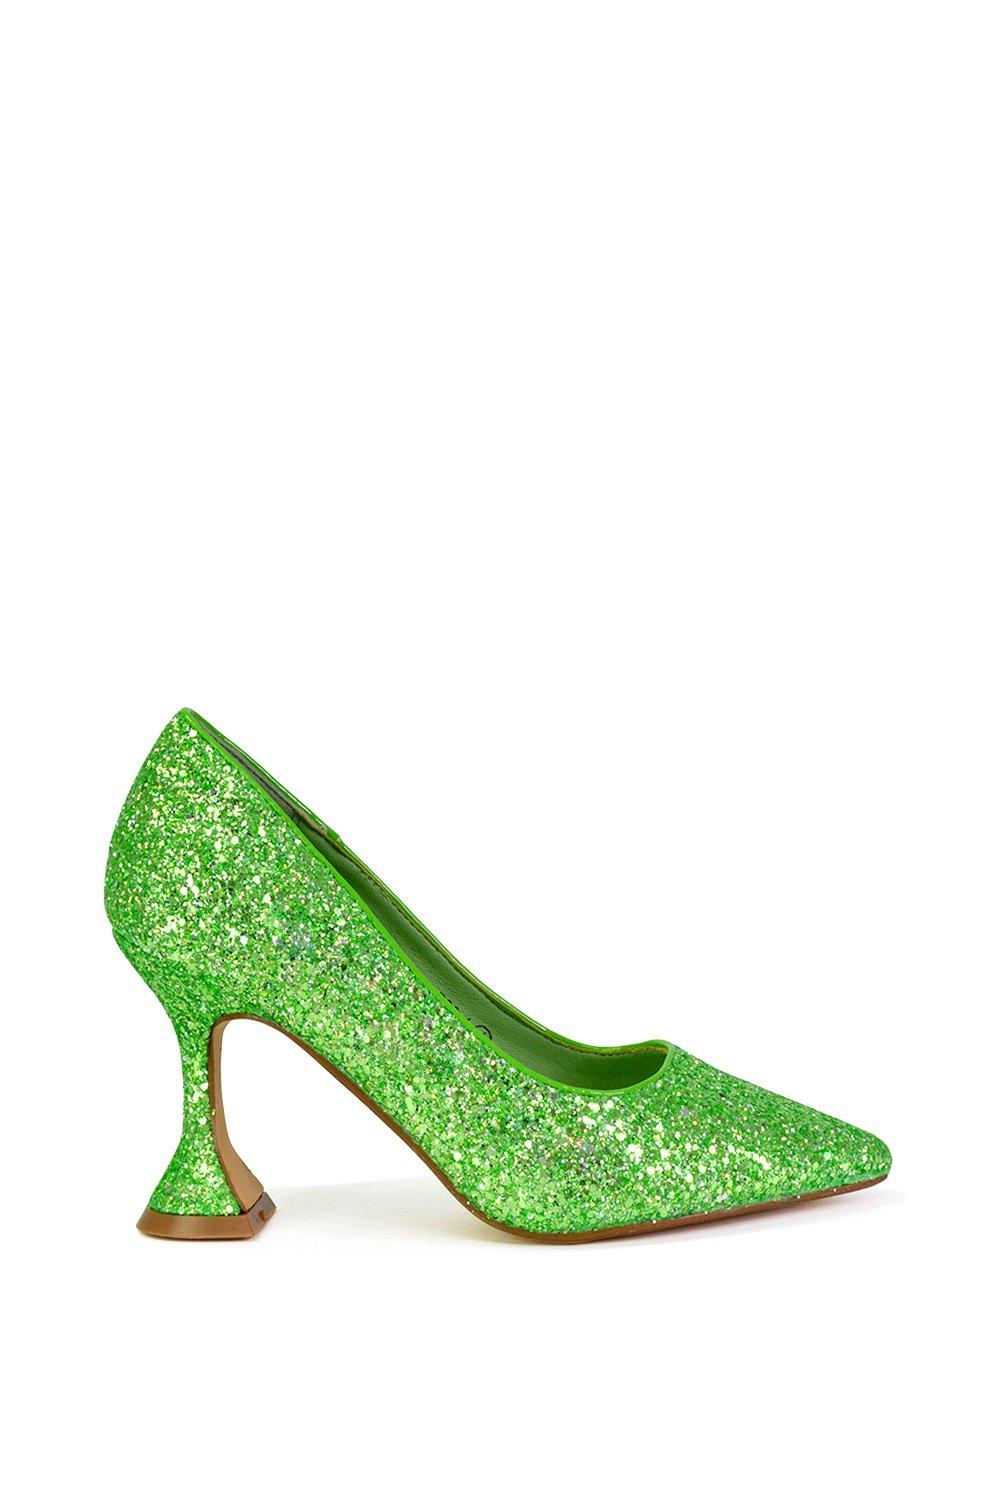 Блестящие туфли-лодочки «Dragonfruit» Туфли-лодочки на блестящем каблуке с острым носком XY London, зеленый туфли лодочки женские замшевые роскошные брендовые с блокировкой цветов заостренный носок тонкий каблук элегантная офисная обувь пика